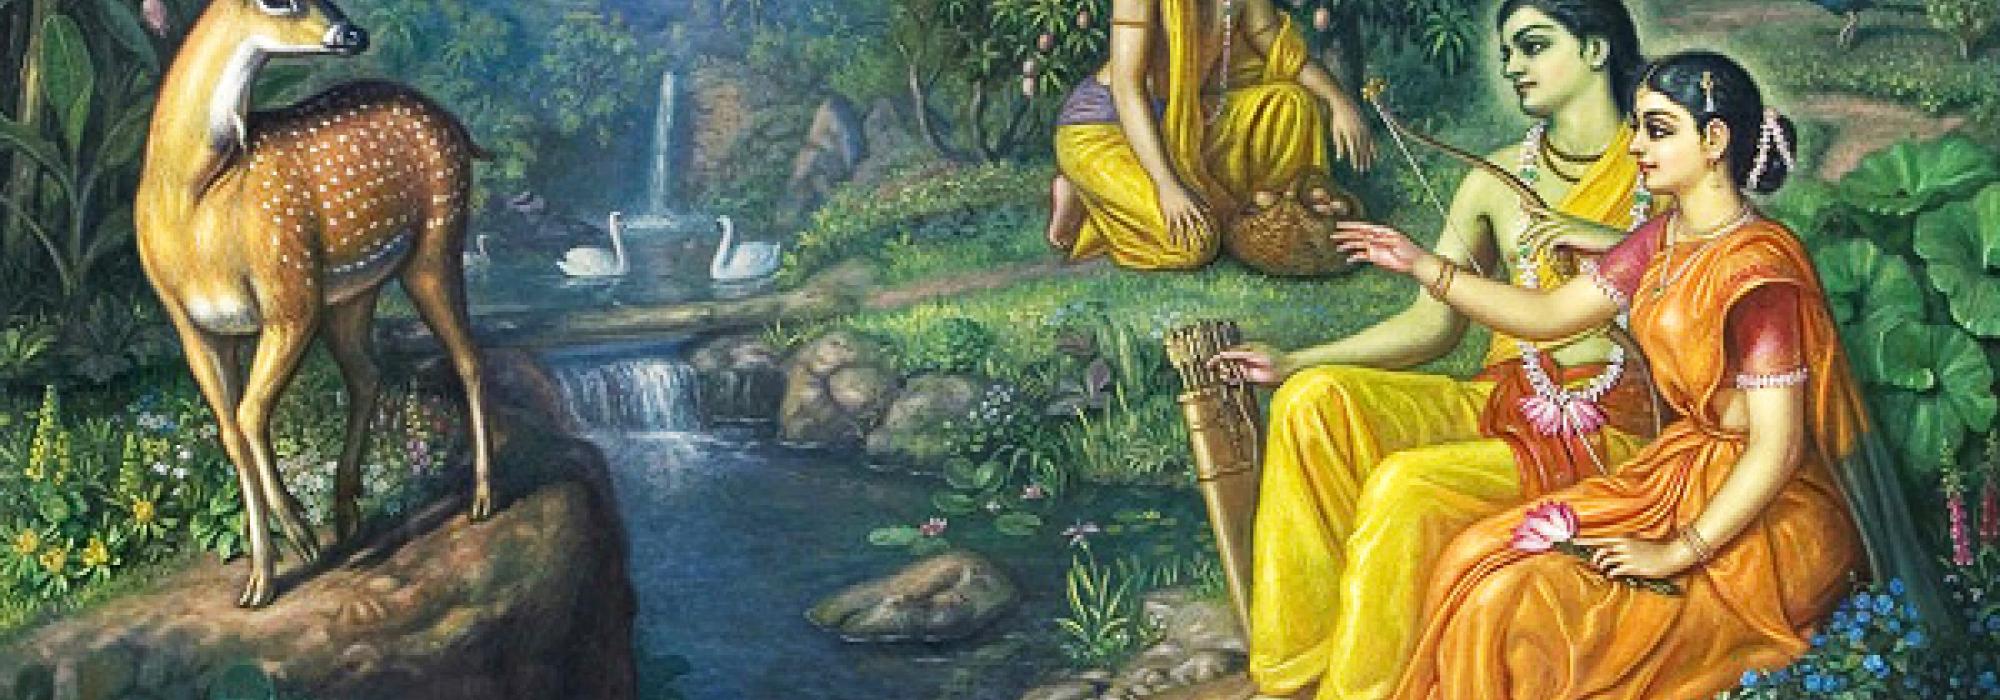 anusara sanskrit – Yoga with Katrina Ariel